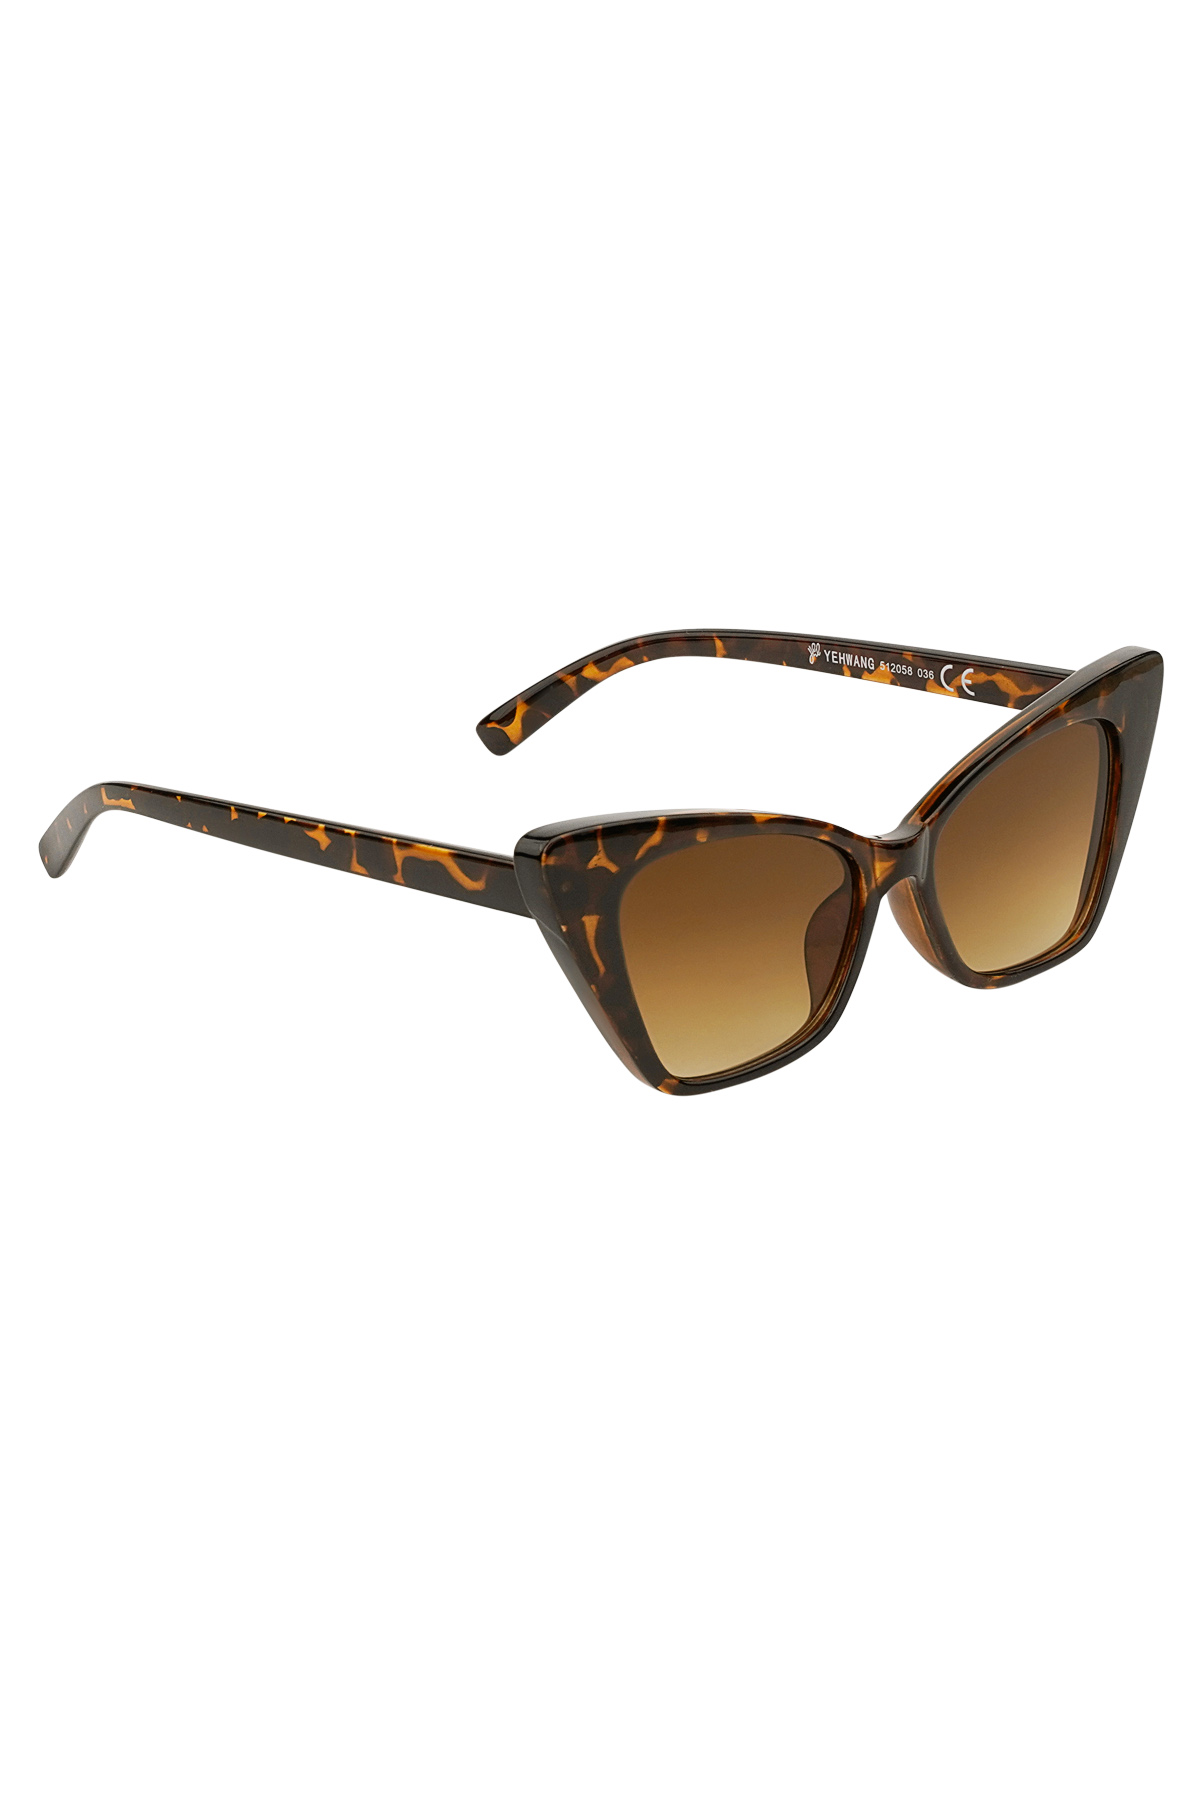 Sonnenbrille mit einfarbigem Rahmen – braun